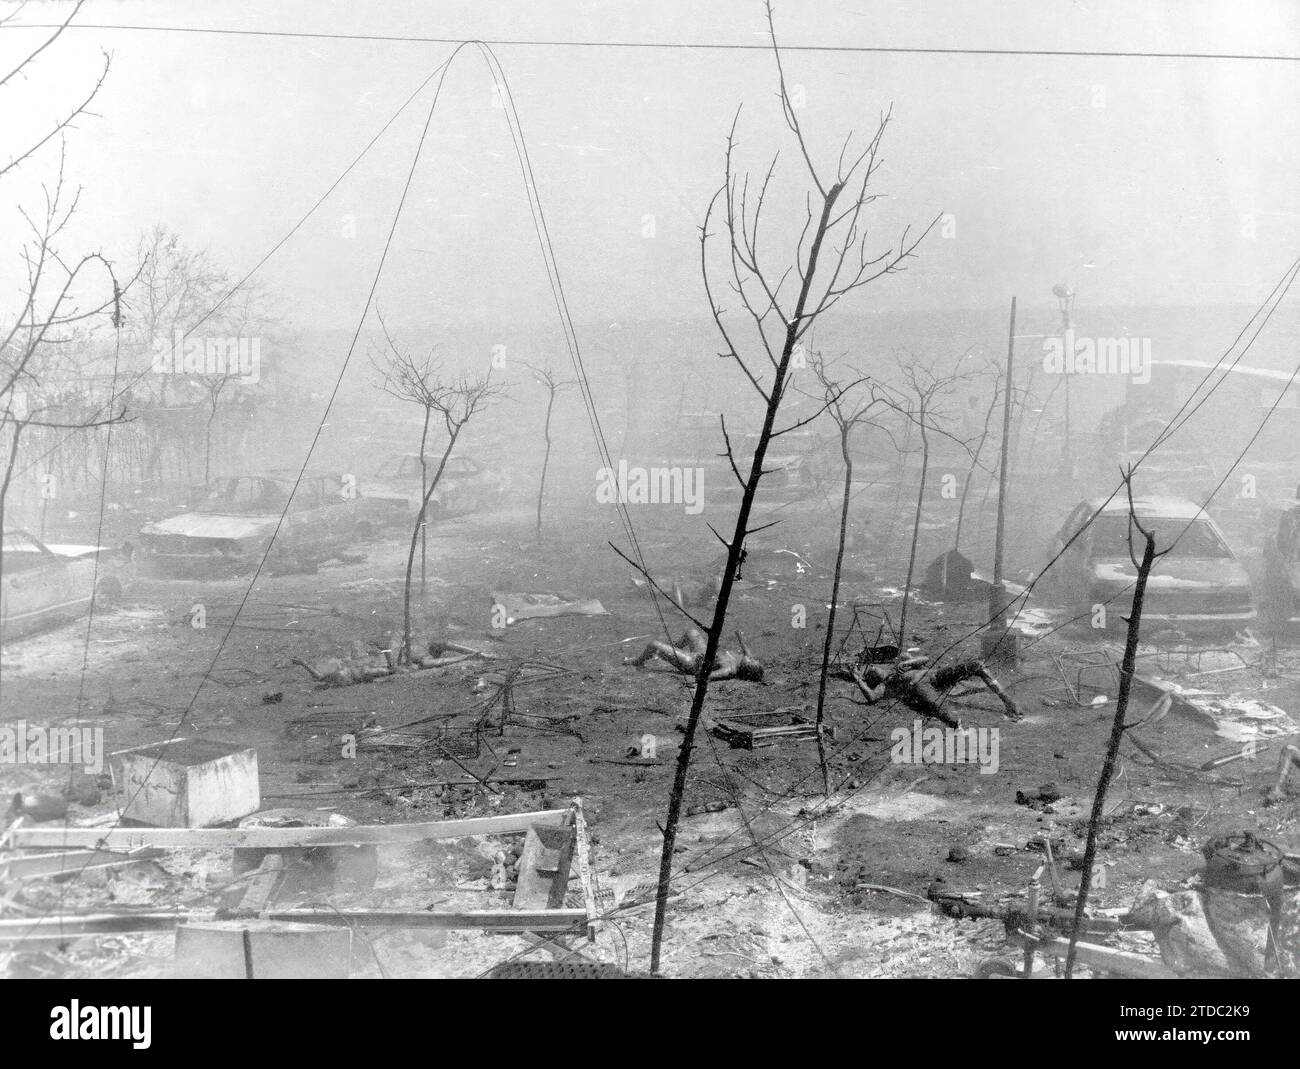 07/10/1978. Explosion eines Propylentankers vor dem Campingplatz „los Alfaques“ in San Carlos de la Rapita (Tarragona). Quelle: Album/Archivo ABC Stockfoto